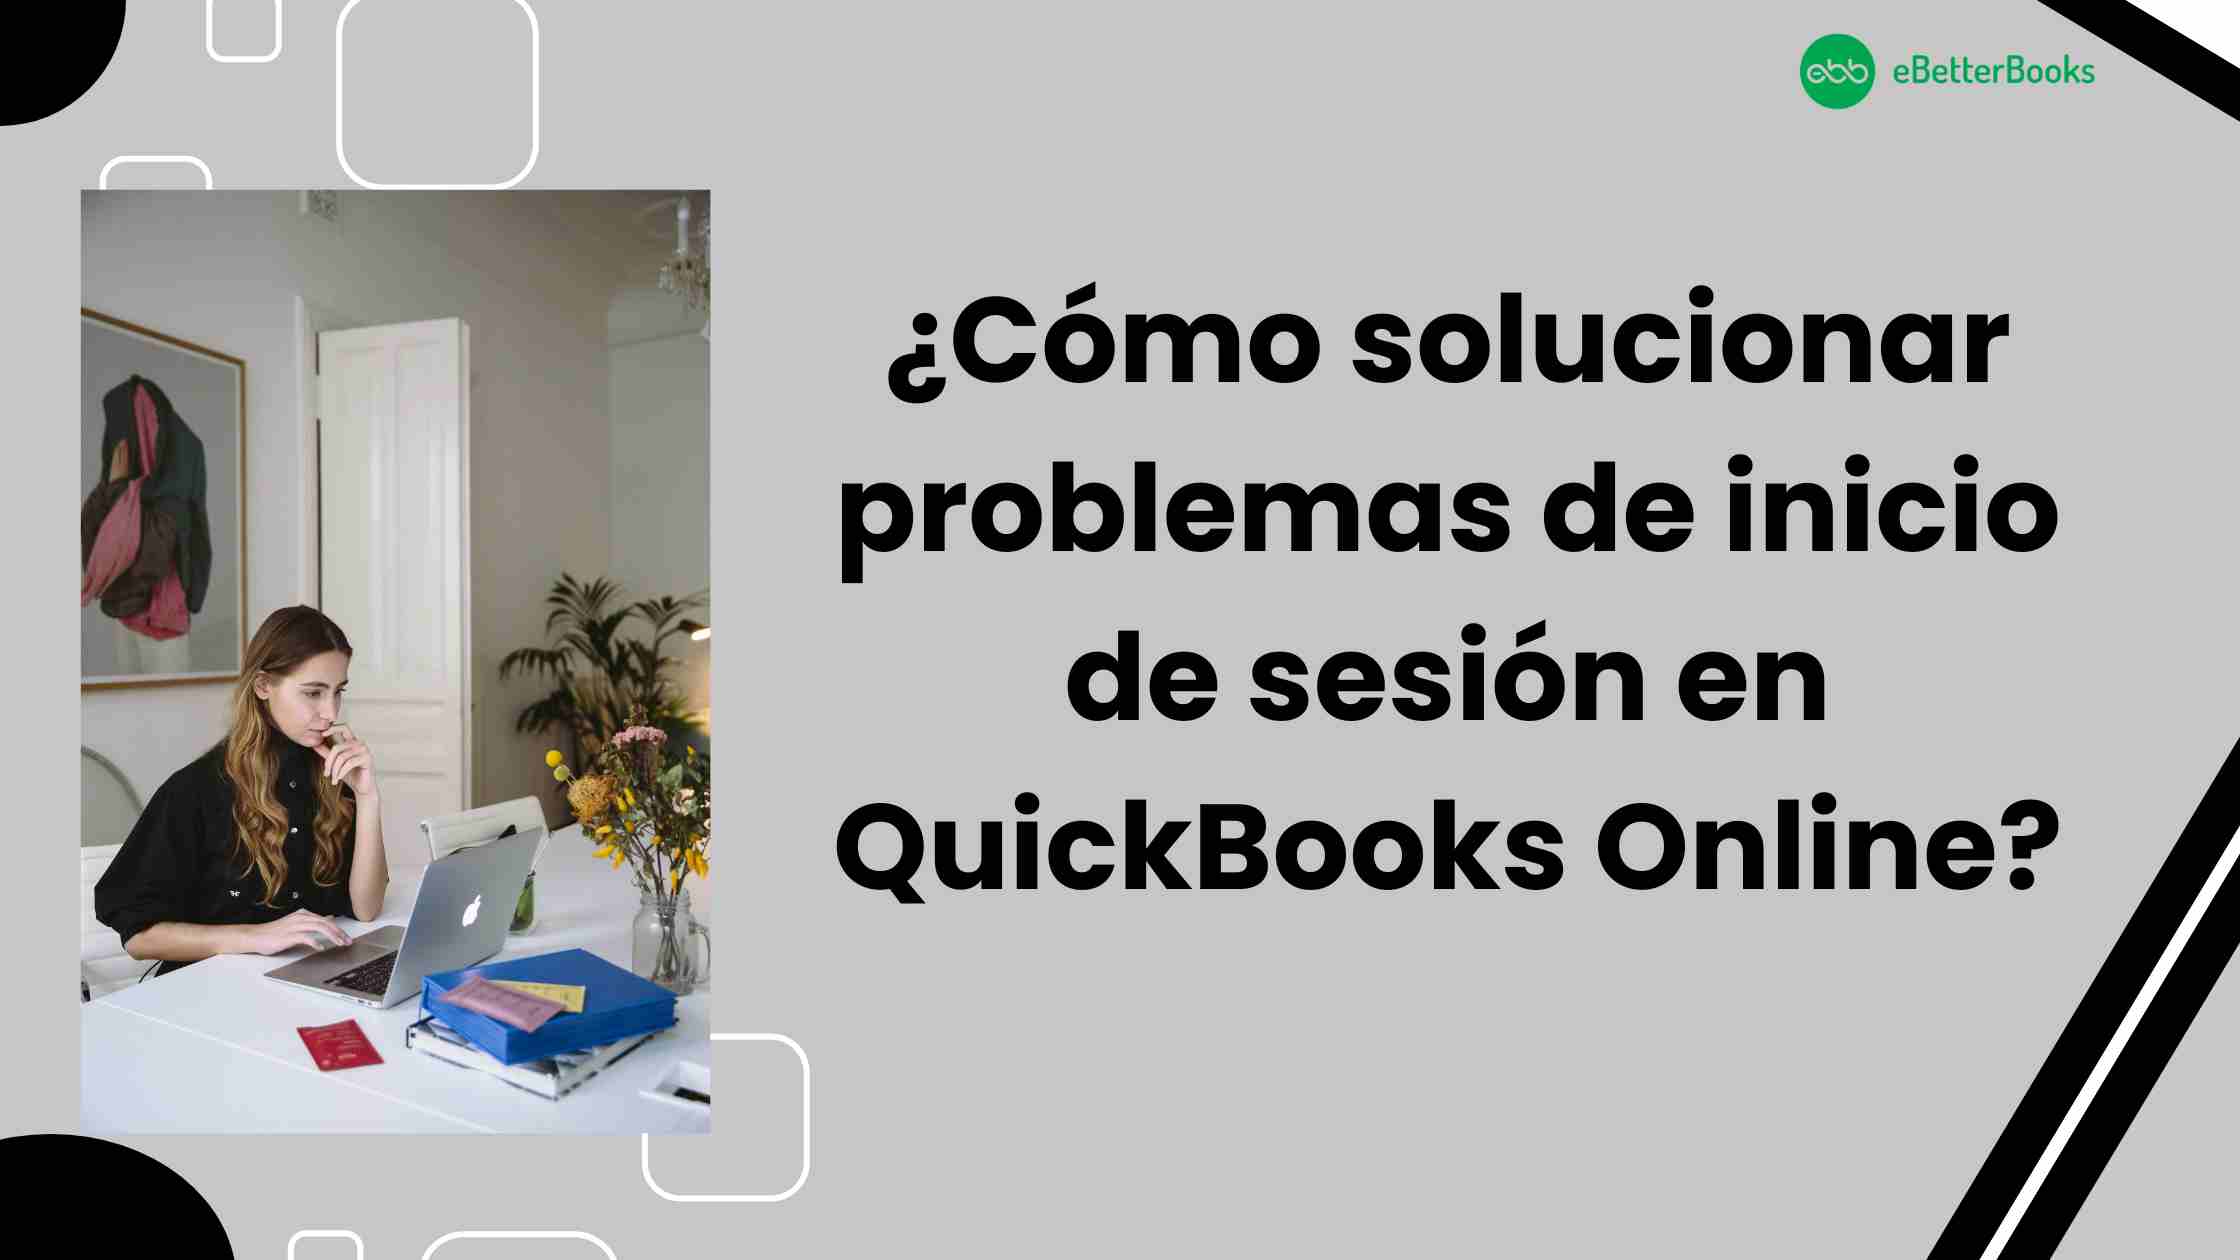 ¿Cómo solucionar problemas de inicio de sesión en QuickBooks Online?